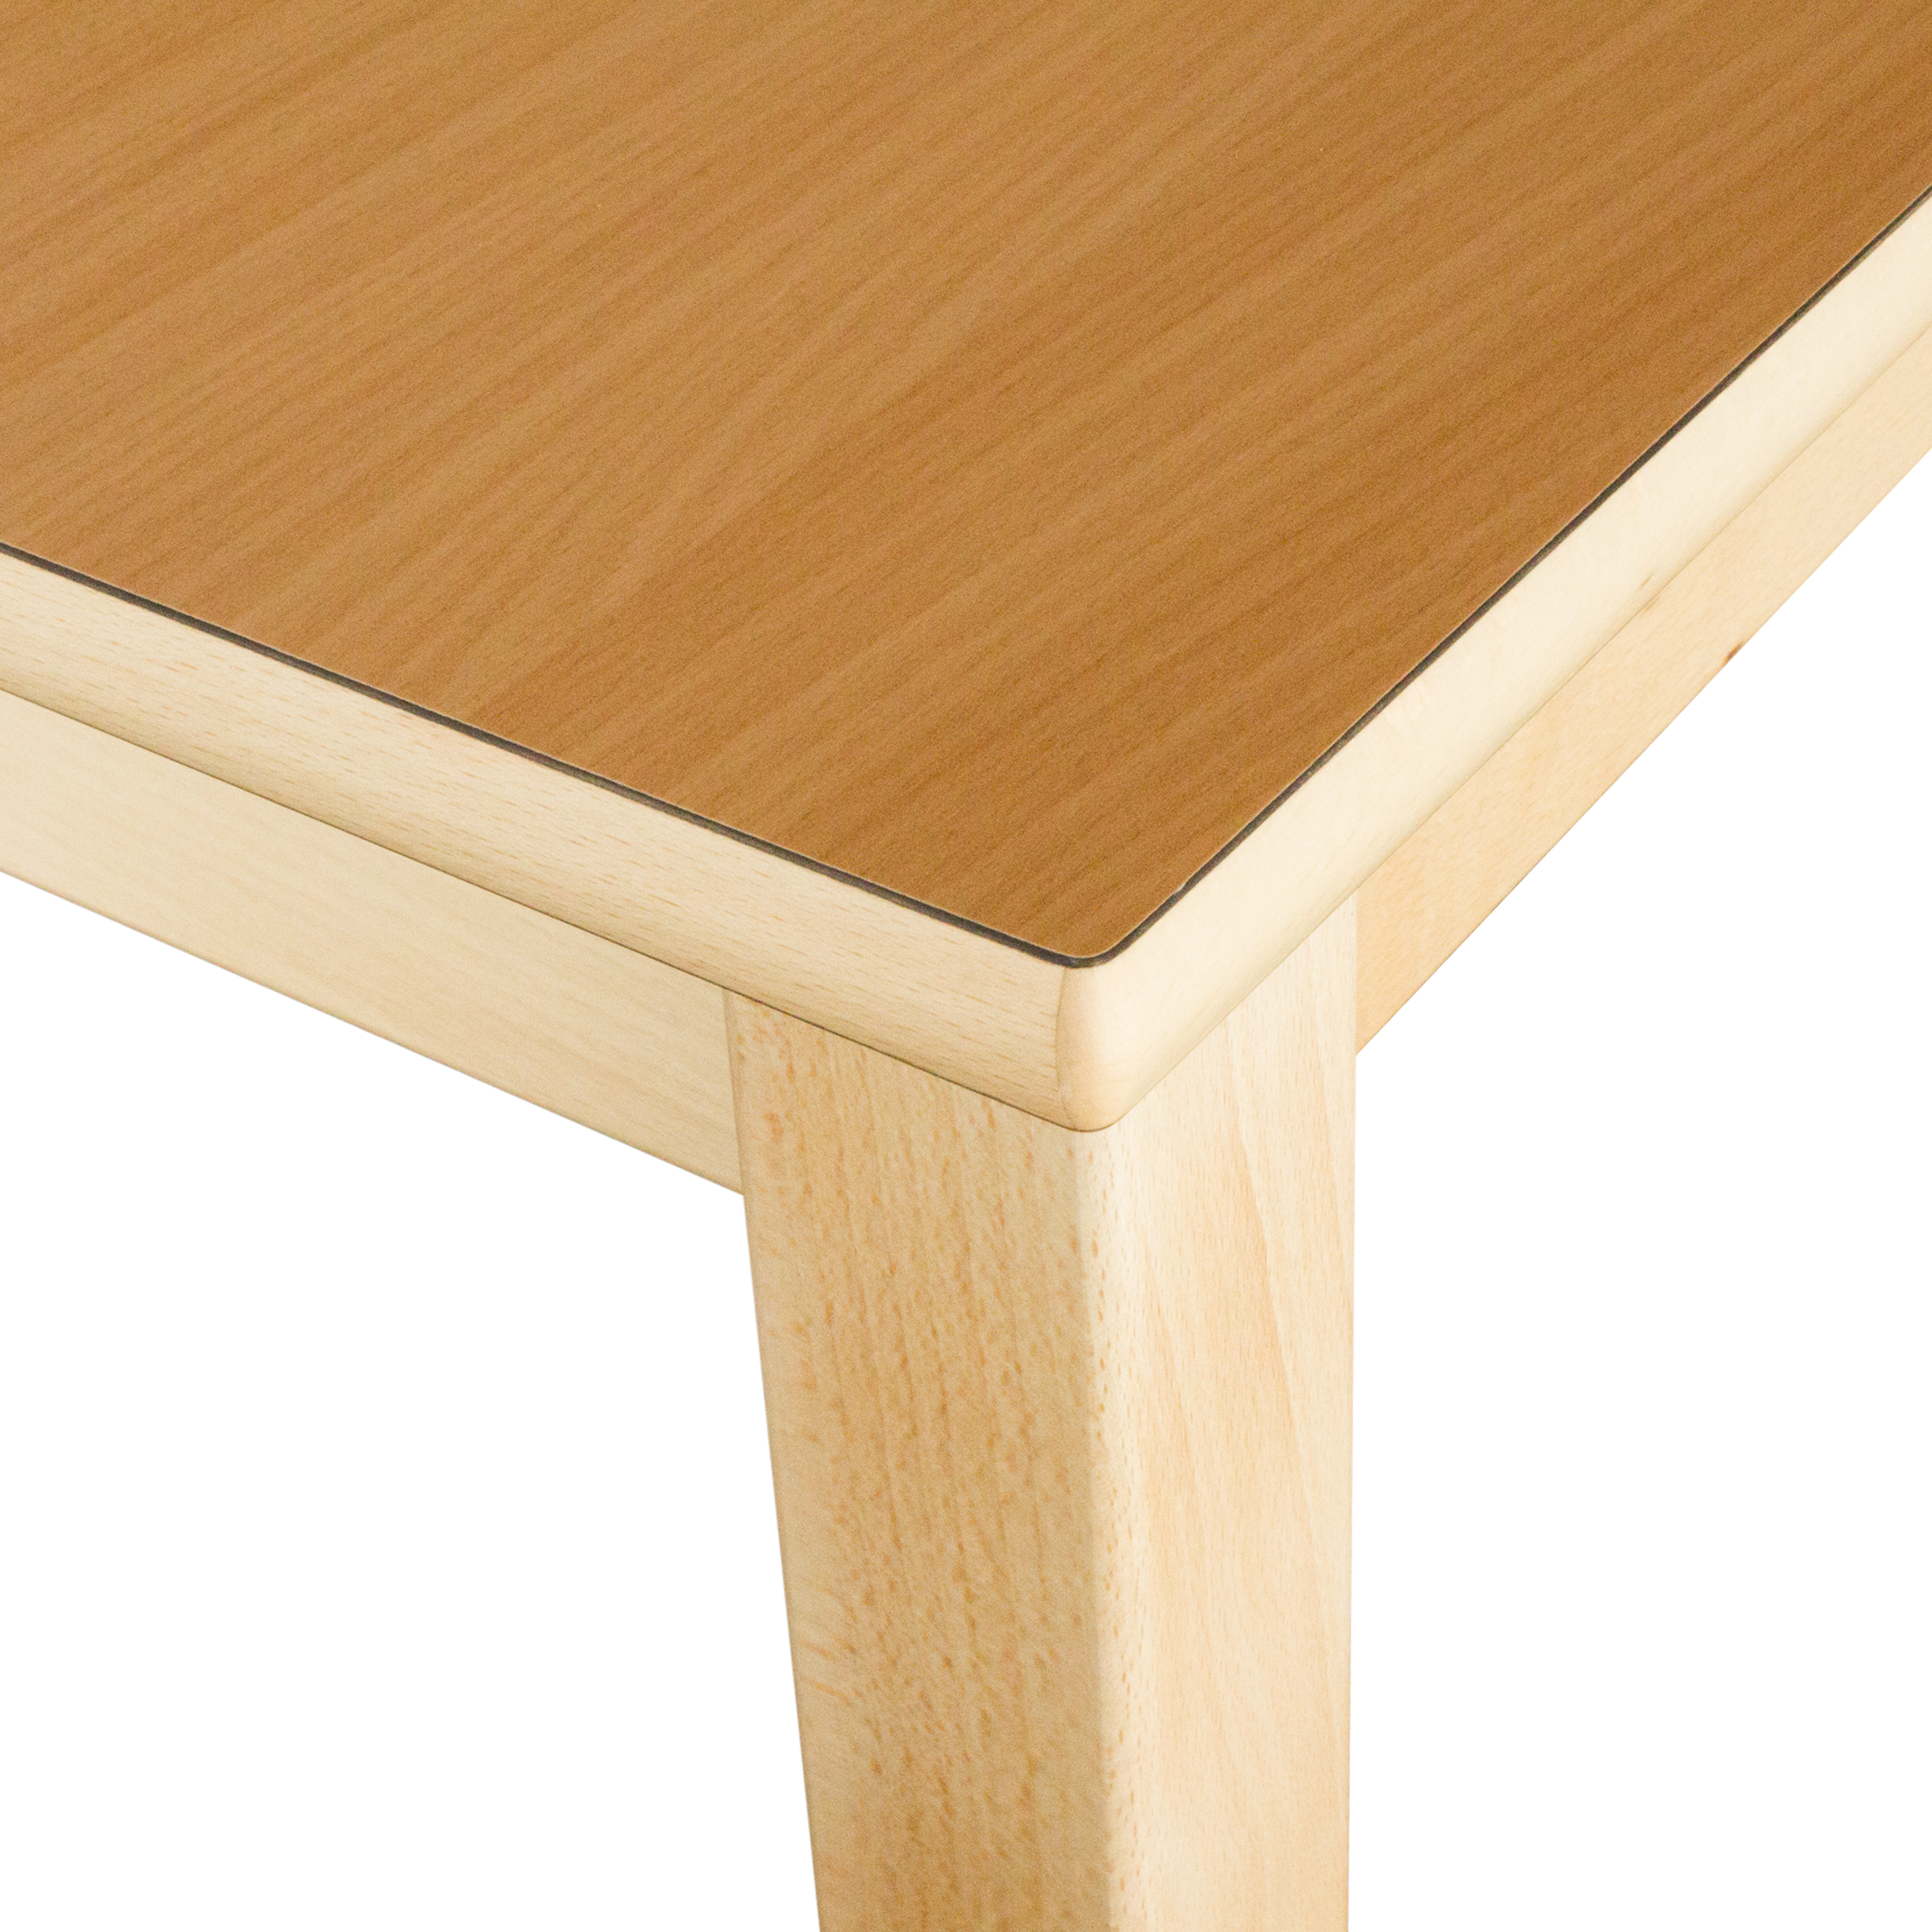 Quadrattisch in der Größe, 80 x 80 cm, Tischhöhe 40 cm